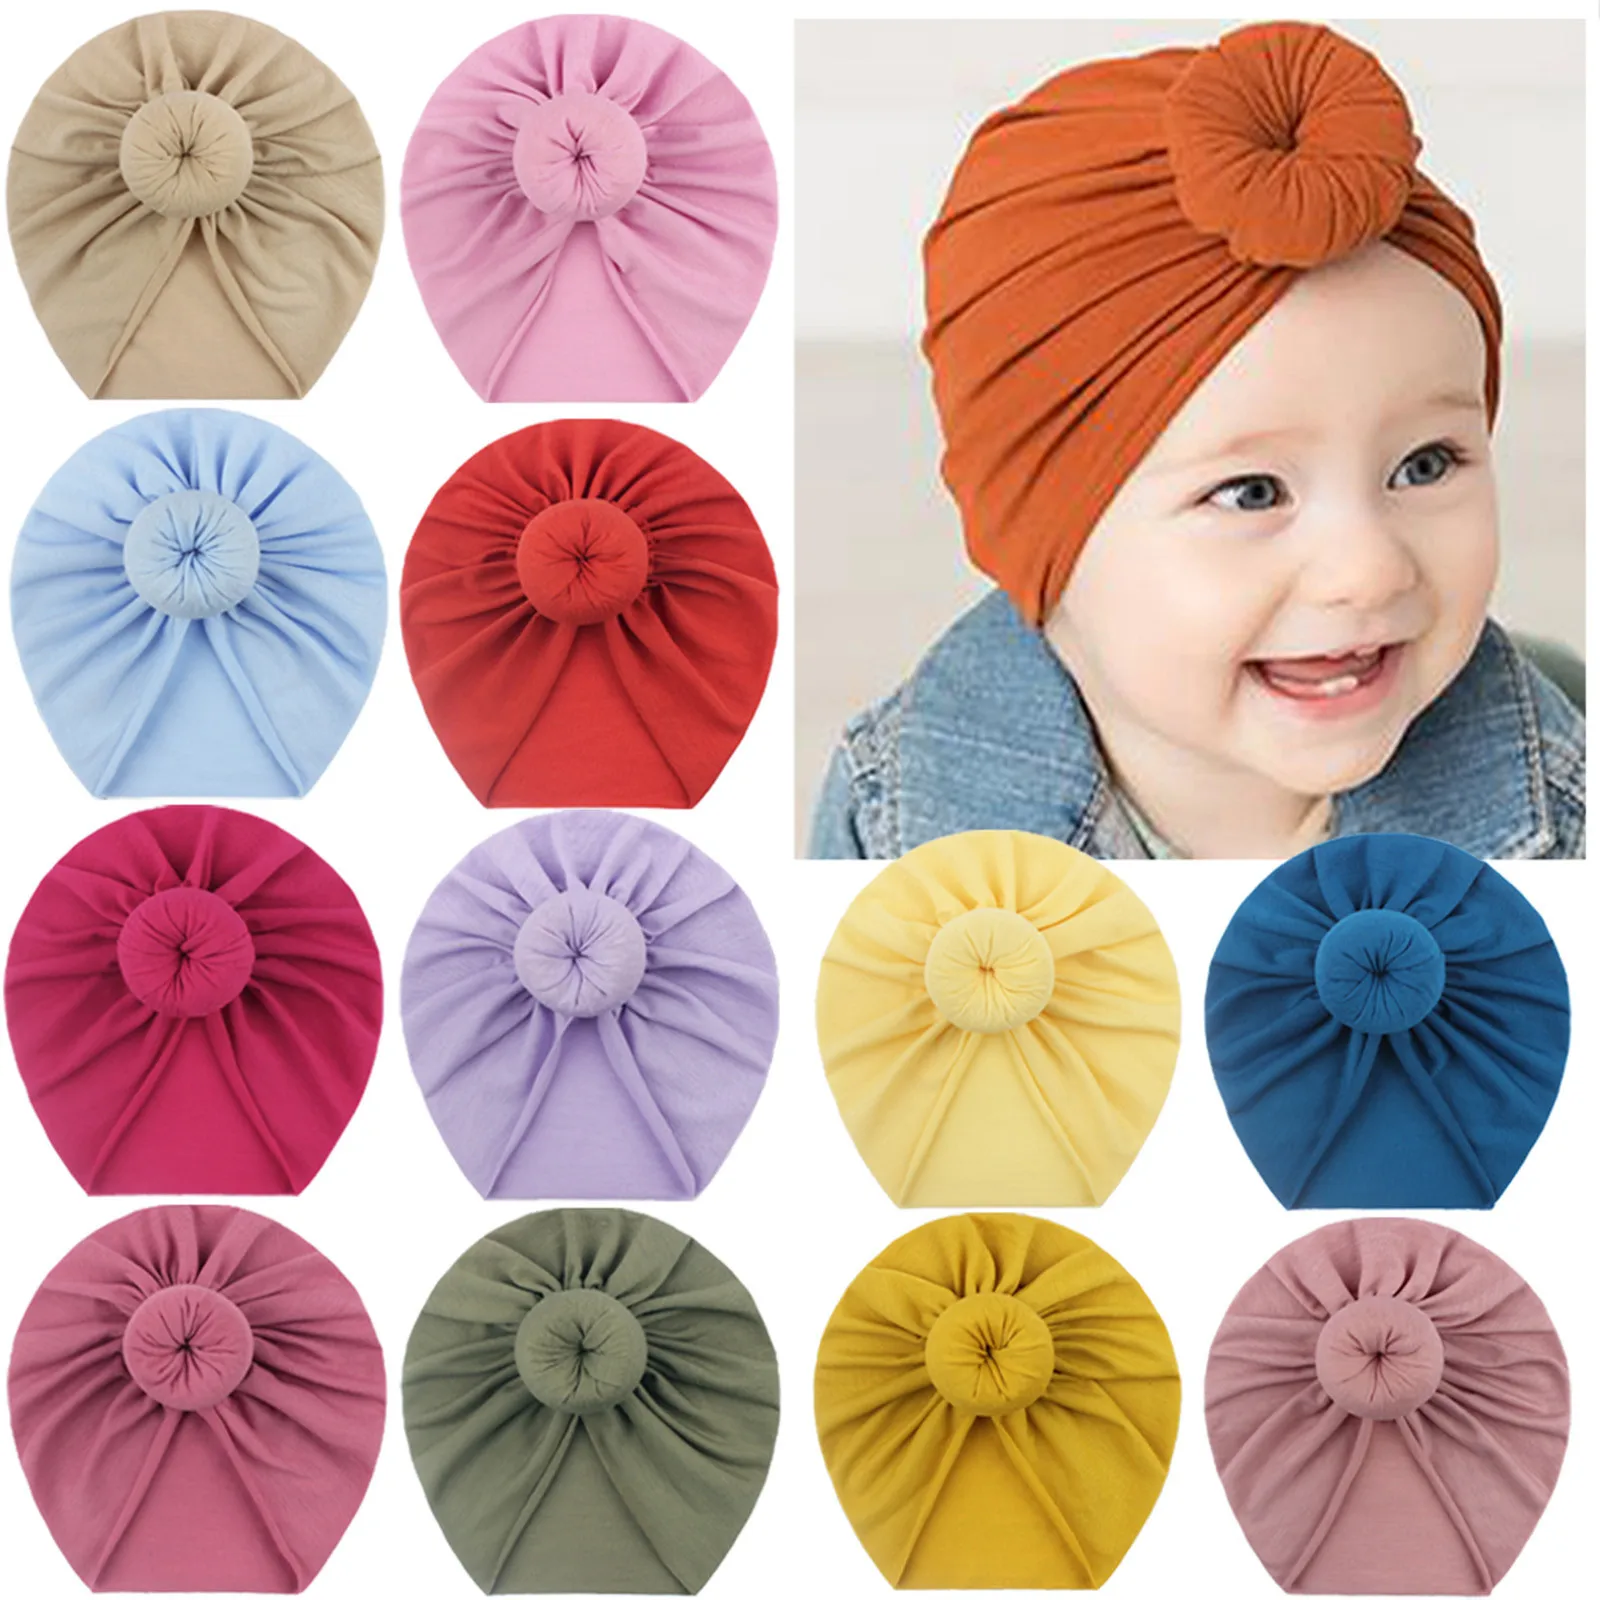 

Toddler Kids Baby Boy Girl cappello annodato solido Beanie Bow copricapo accessori nastro elastico copricapo per bambini